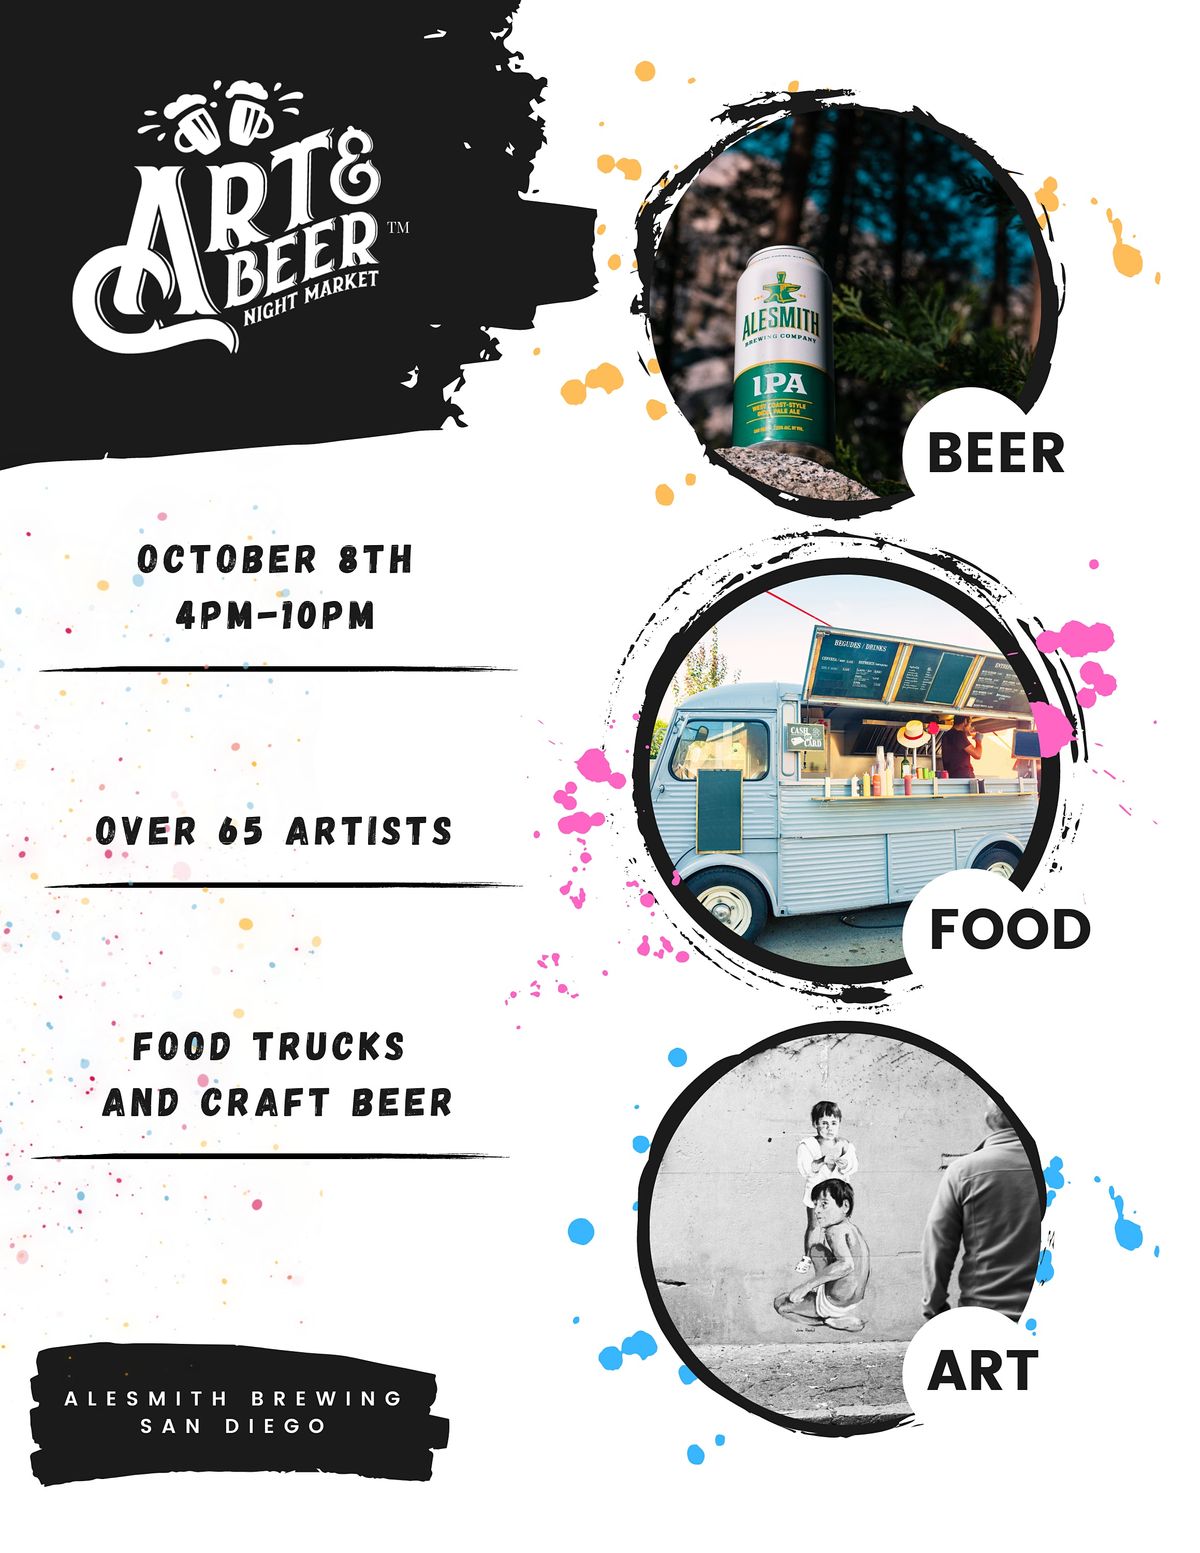 Art & Beer Night Market SD!